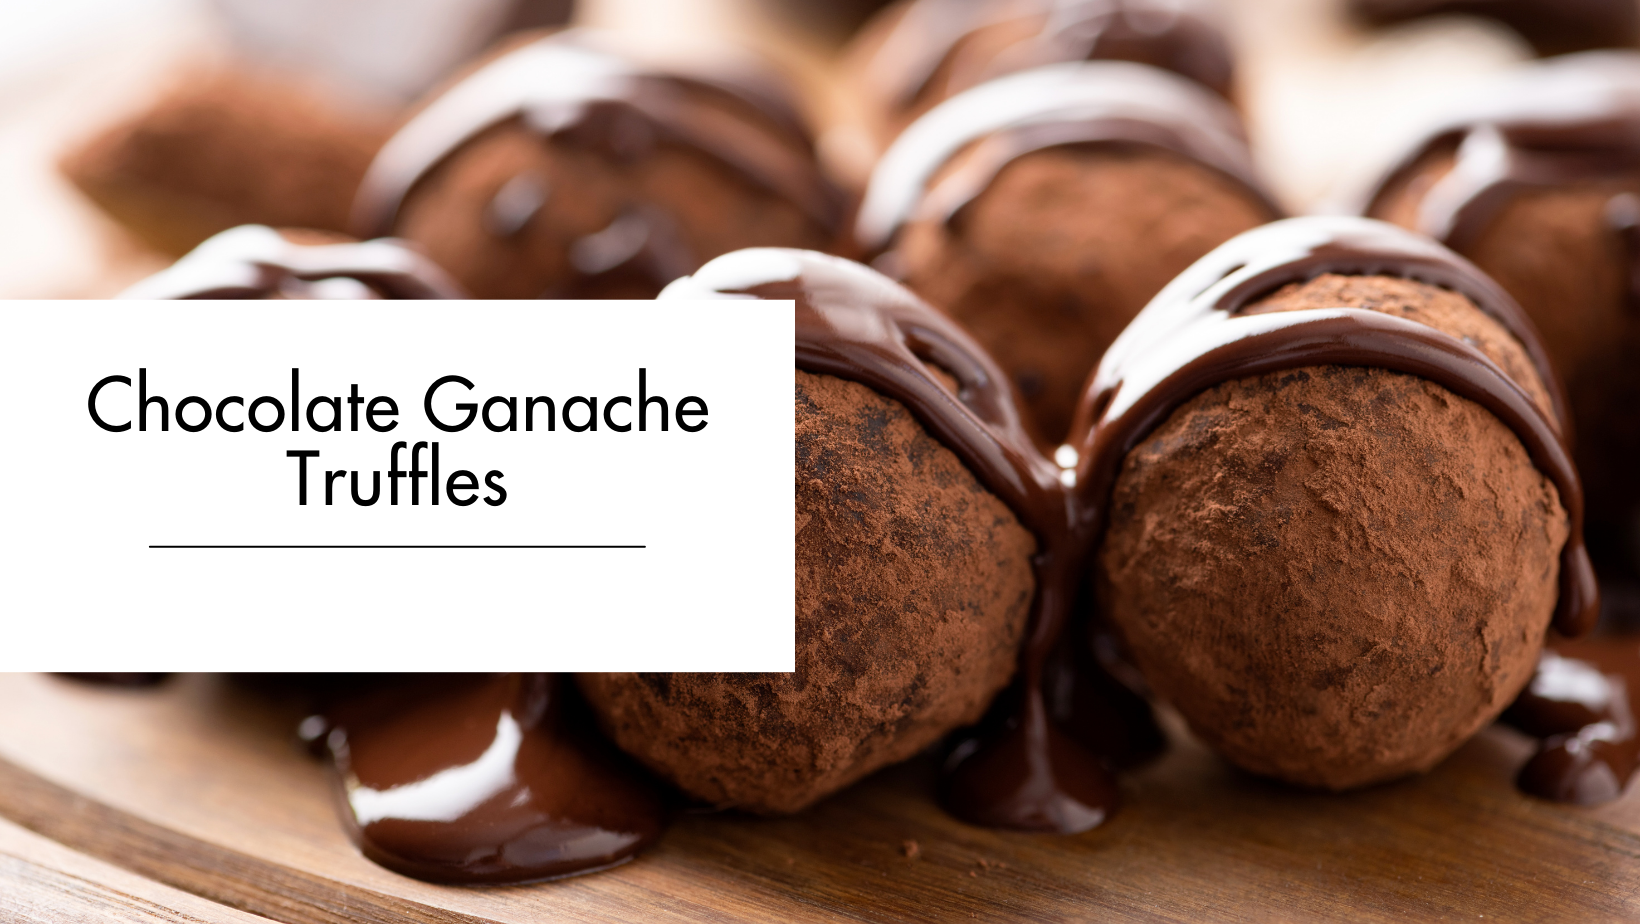 Chocolate Ganache Truffles